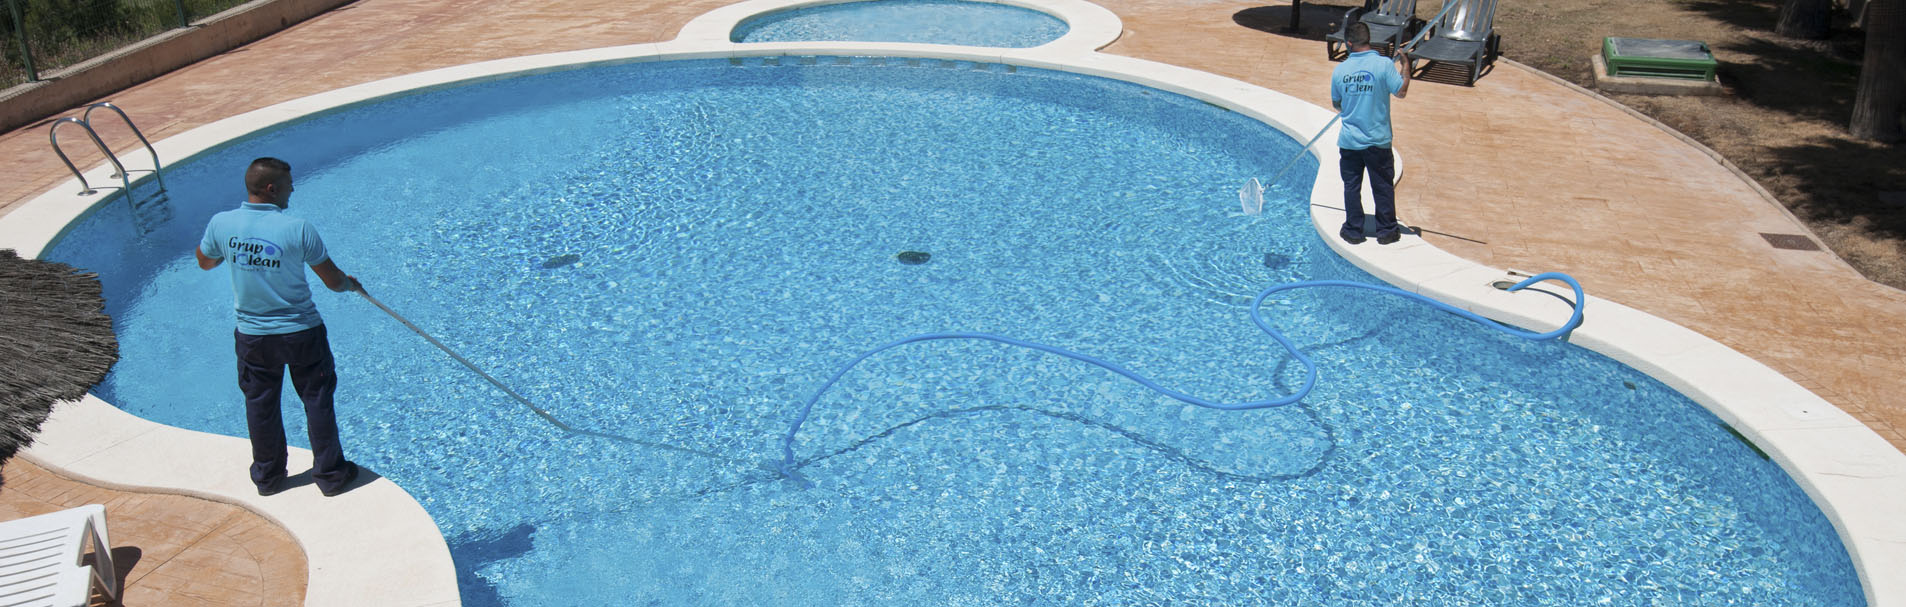 Ejemplo limpieza y mantenimiento de piscinas